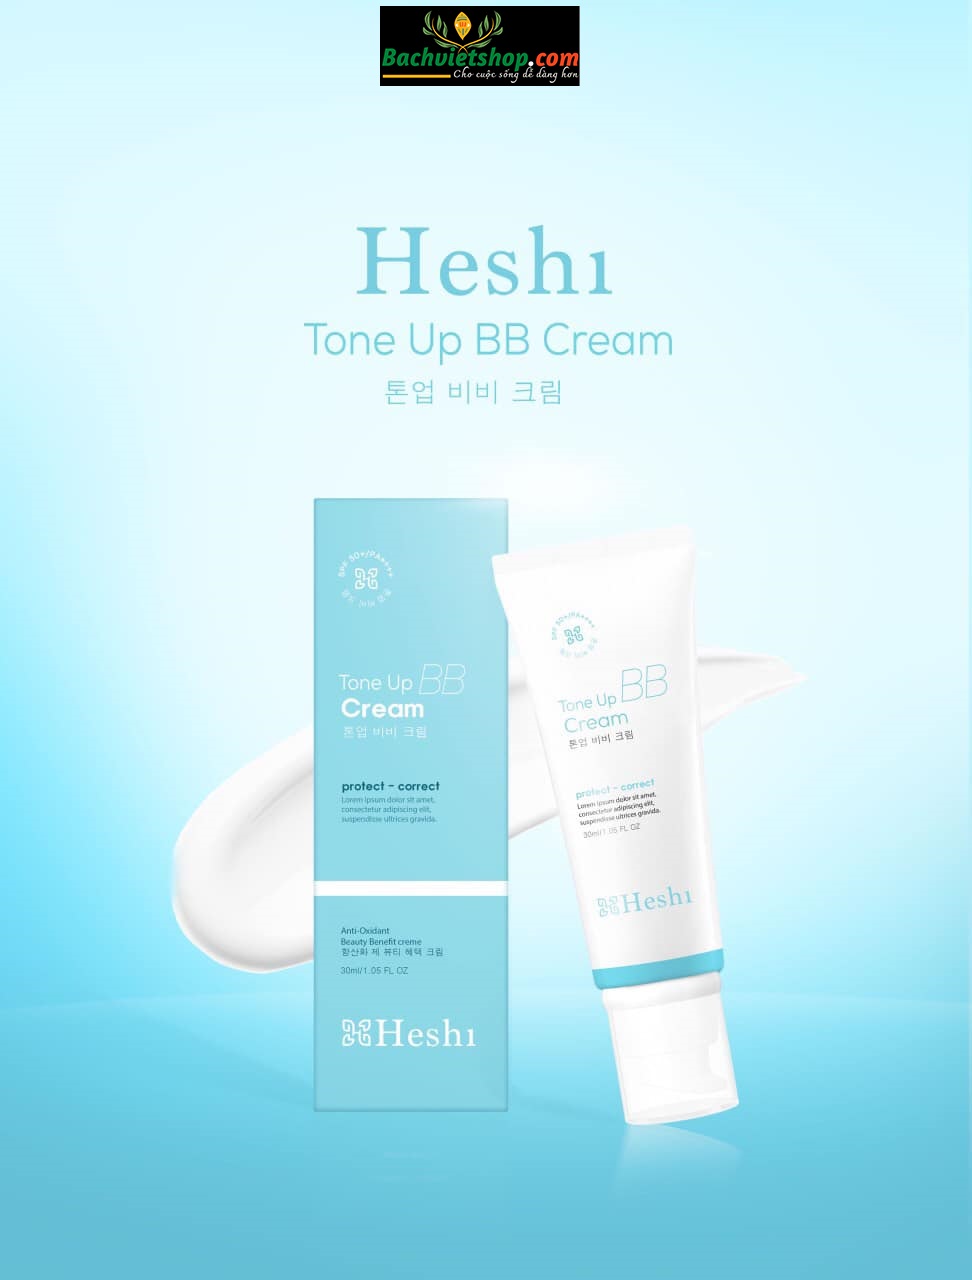 Tone up BB cream Heshi chống nắng dưỡng trắng, tạo lớp makeup mỏng nhẹ cho da!